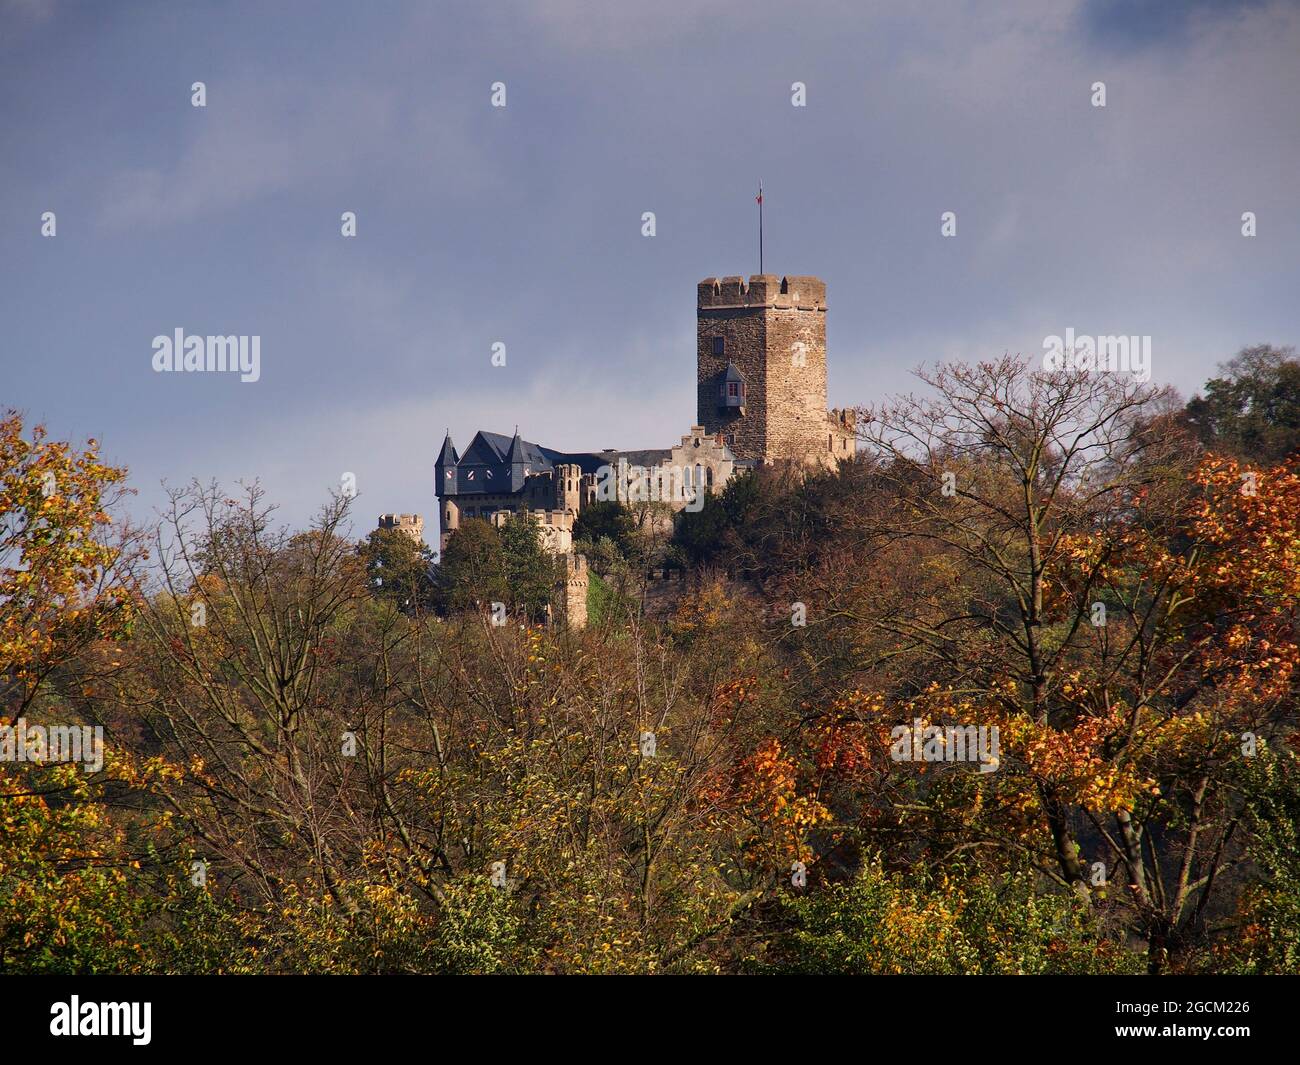 Château de Lahneck situé dans la ville de Lahnstein en Rhénanie-Palatinat, en Allemagne, vu d'une croisière sur le Rhin Banque D'Images